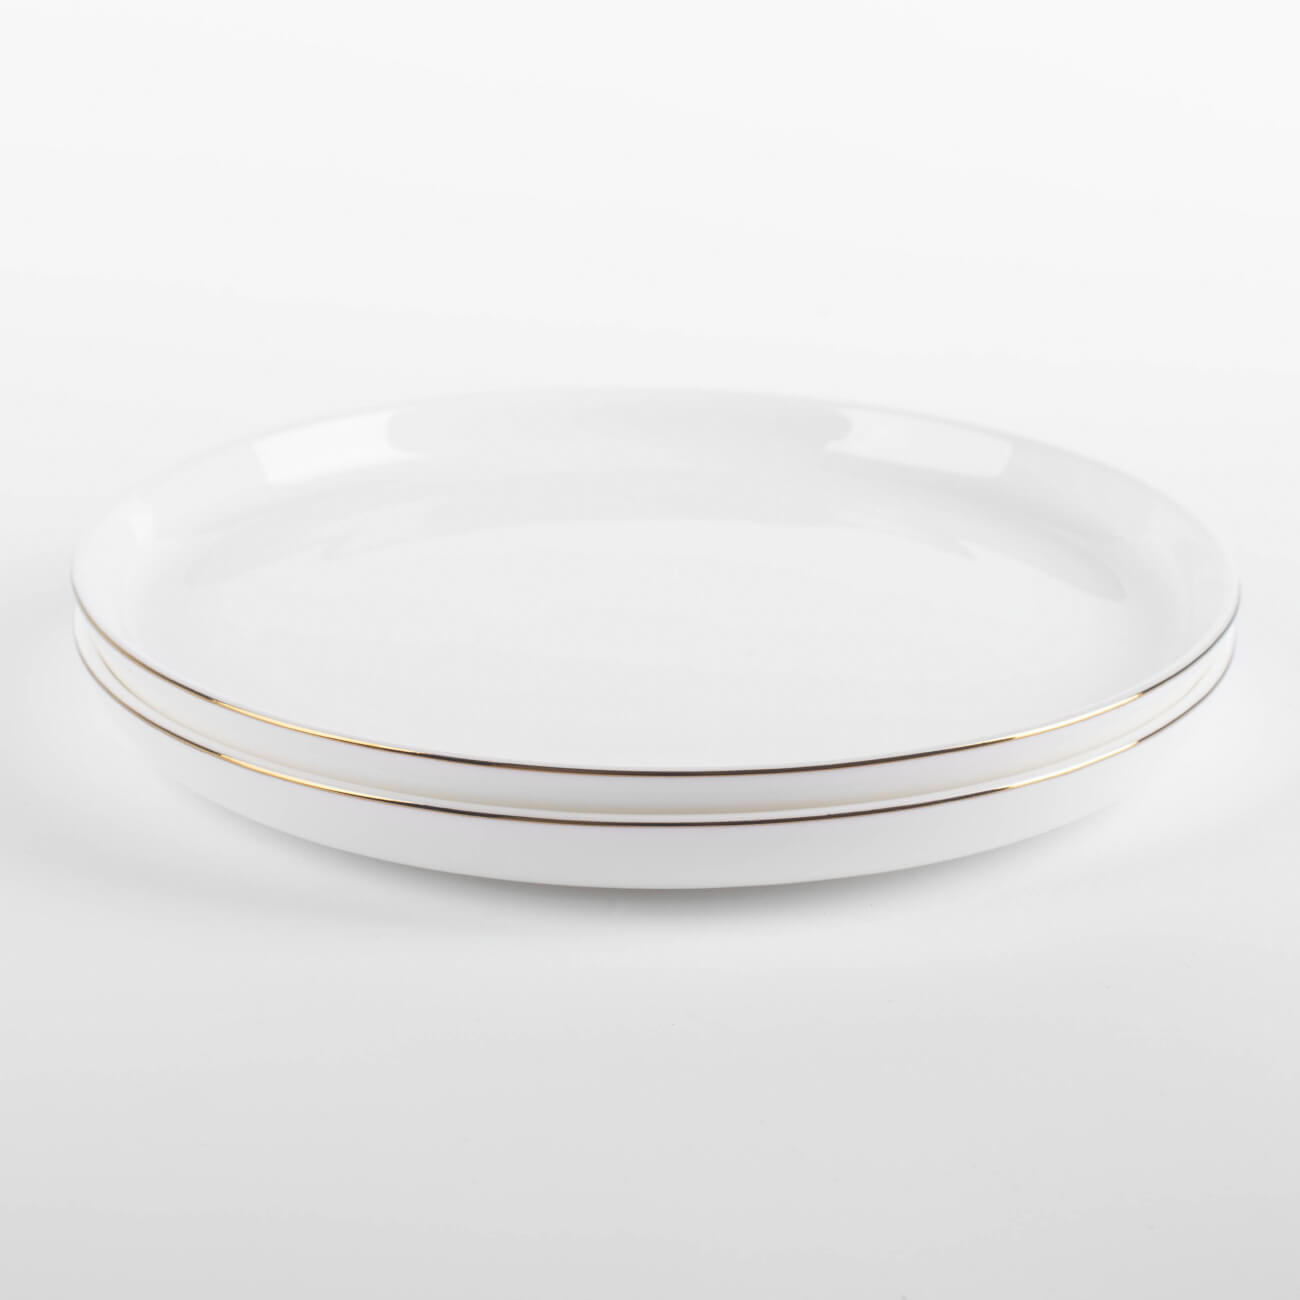 Тарелка десертная, 20 см, 2 шт, фарфор F, белая, Ideal gold - фото 1